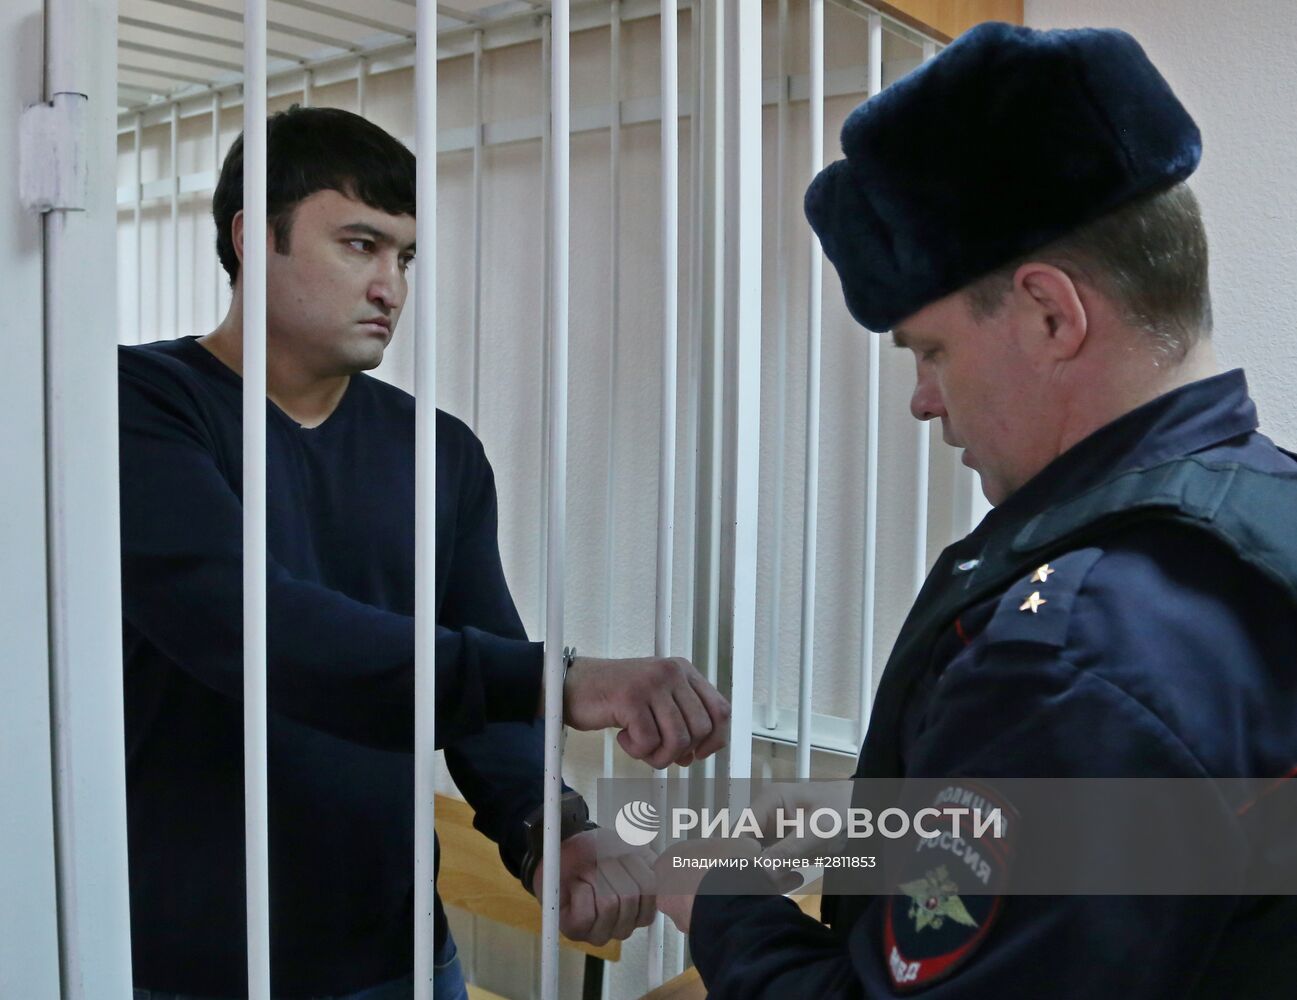 Оглашение приговора врачу-хирургу Илье Зелендинову в Белгороде